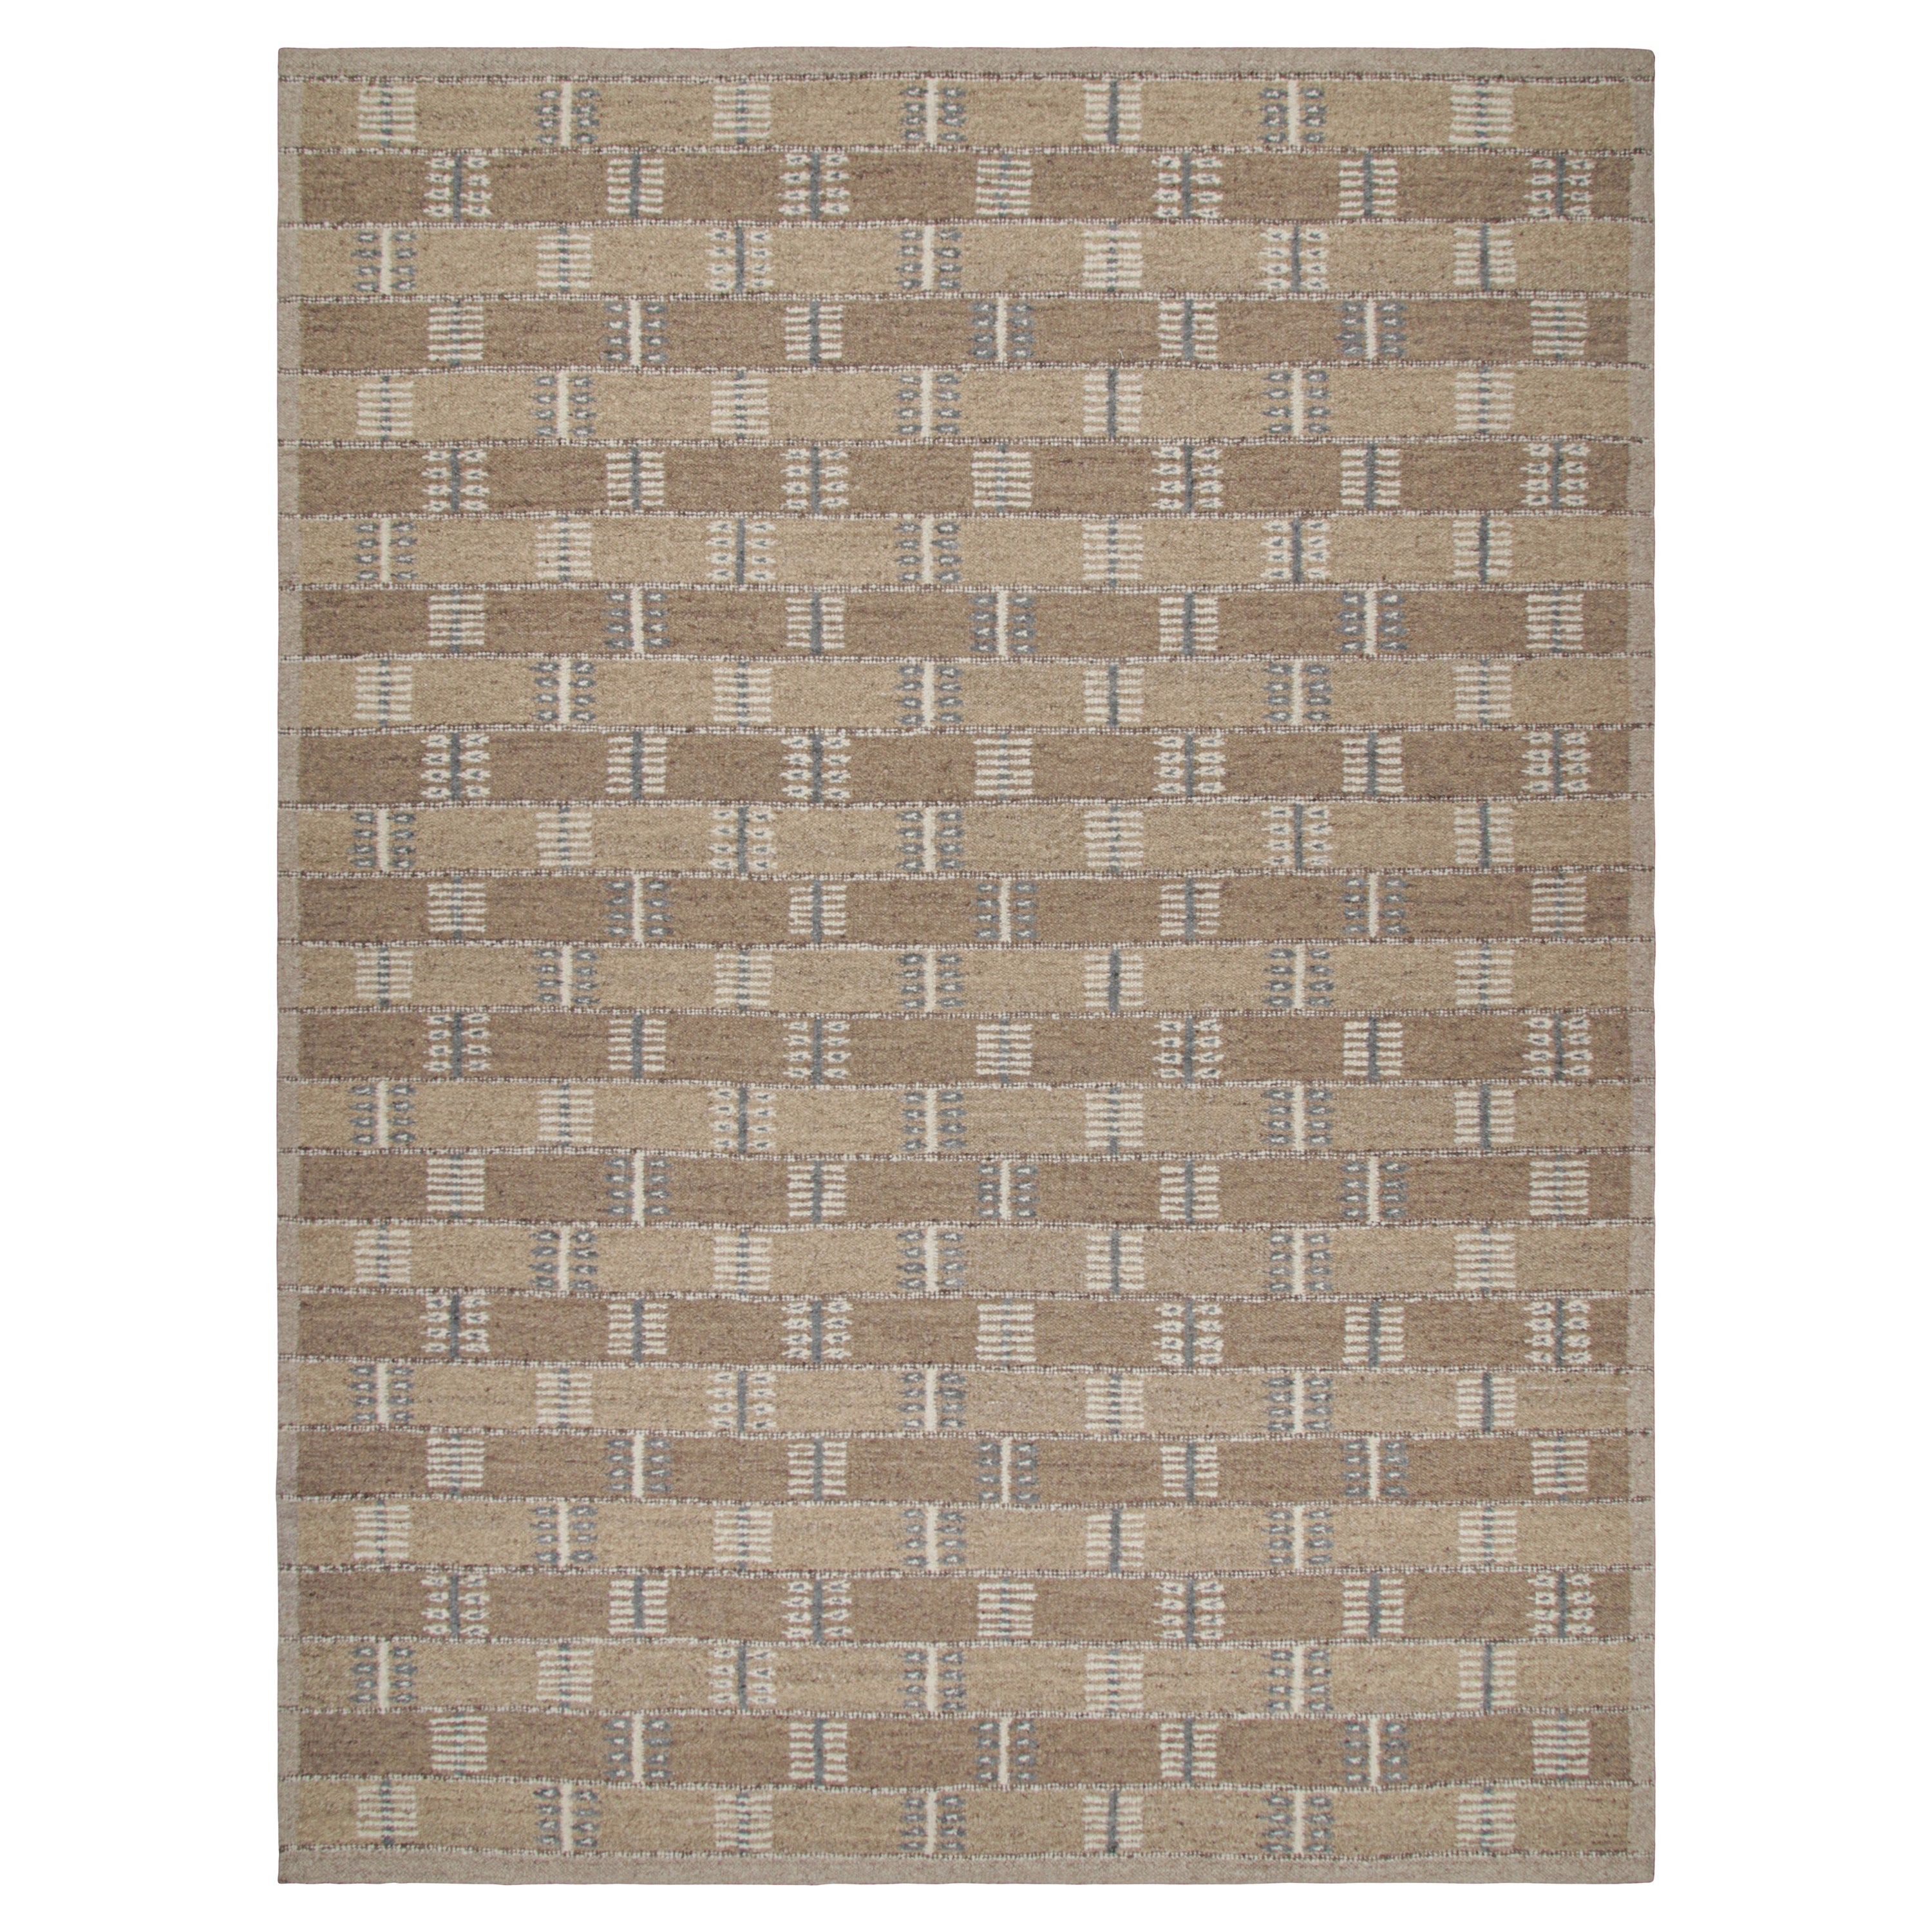 Rug & Kilim's Scandinavian Style Rug with Beige-Brown and Gray Geometric Pattern (tapis de style scandinave à motifs géométriques beige, marron et gris)